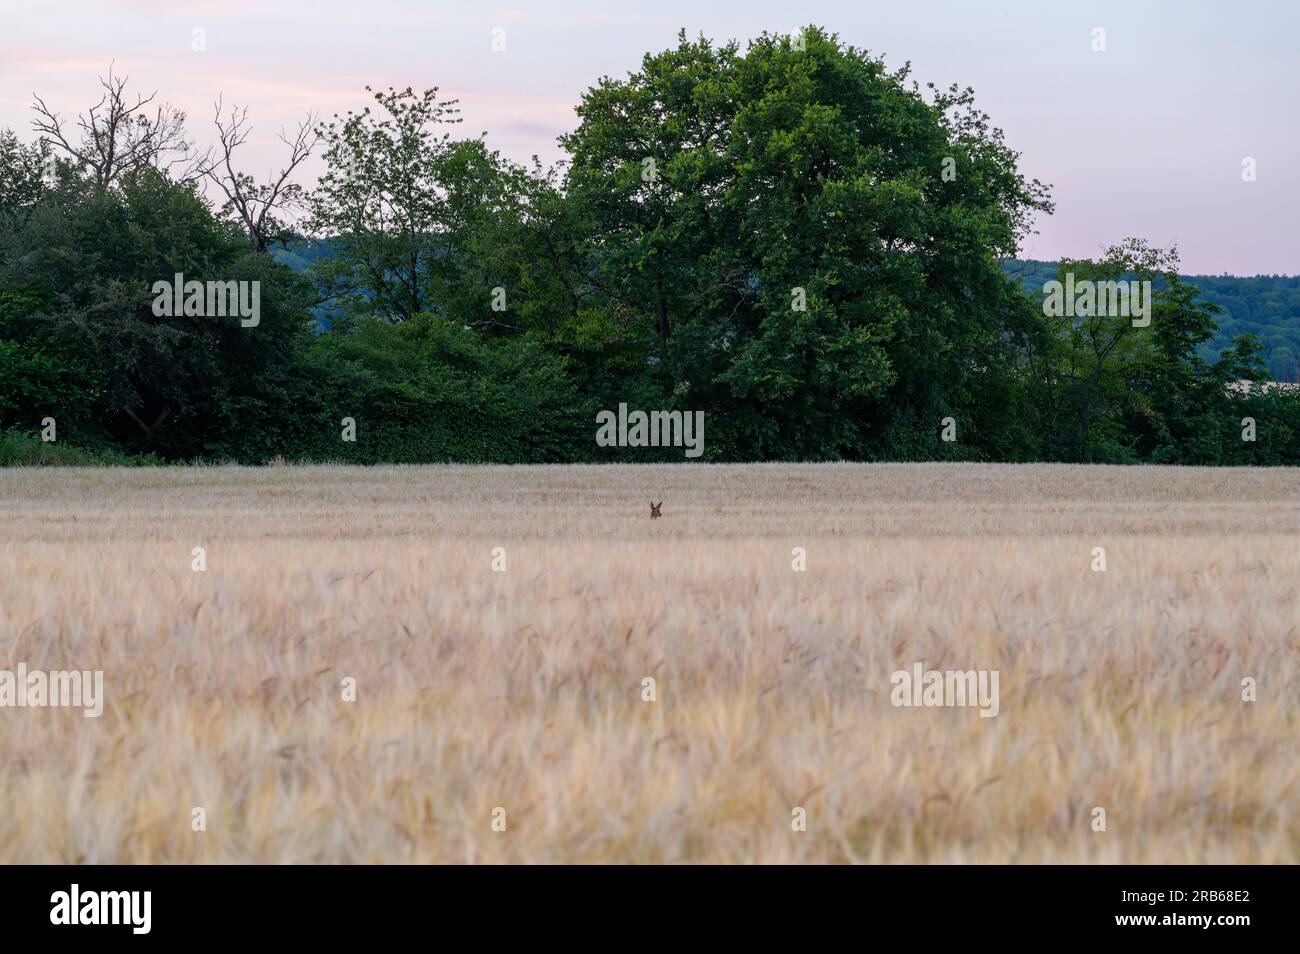 Der Kopf eines Hirsches, das durch ein Weizenfeld mit einer Reihe von Bäumen im Hintergrund sticht. Stockfoto